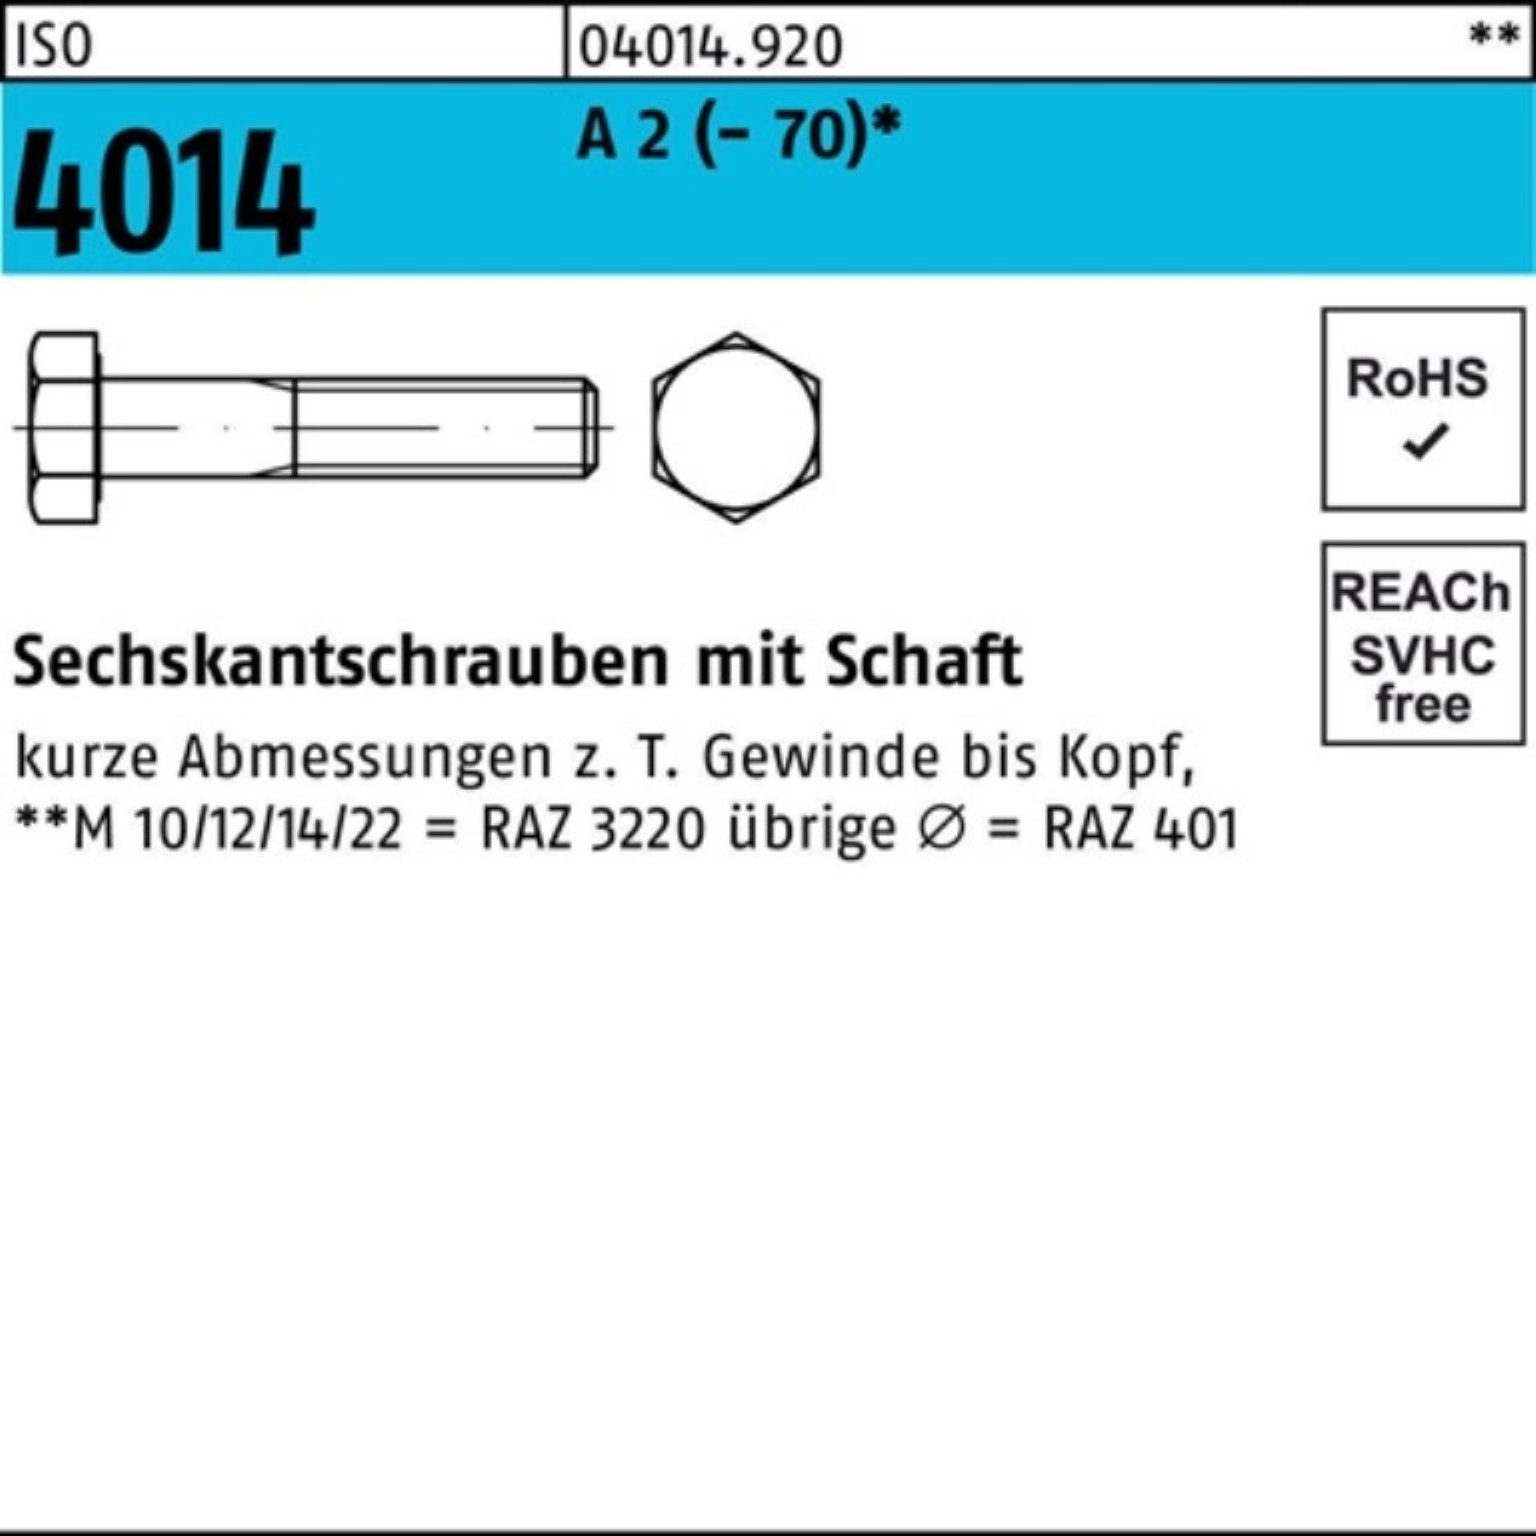 Bufab Sechskantschraube 100er Pack Sechskantschraube ISO 4014 Schaft M20x 80 A 2 (70) 1 Stü